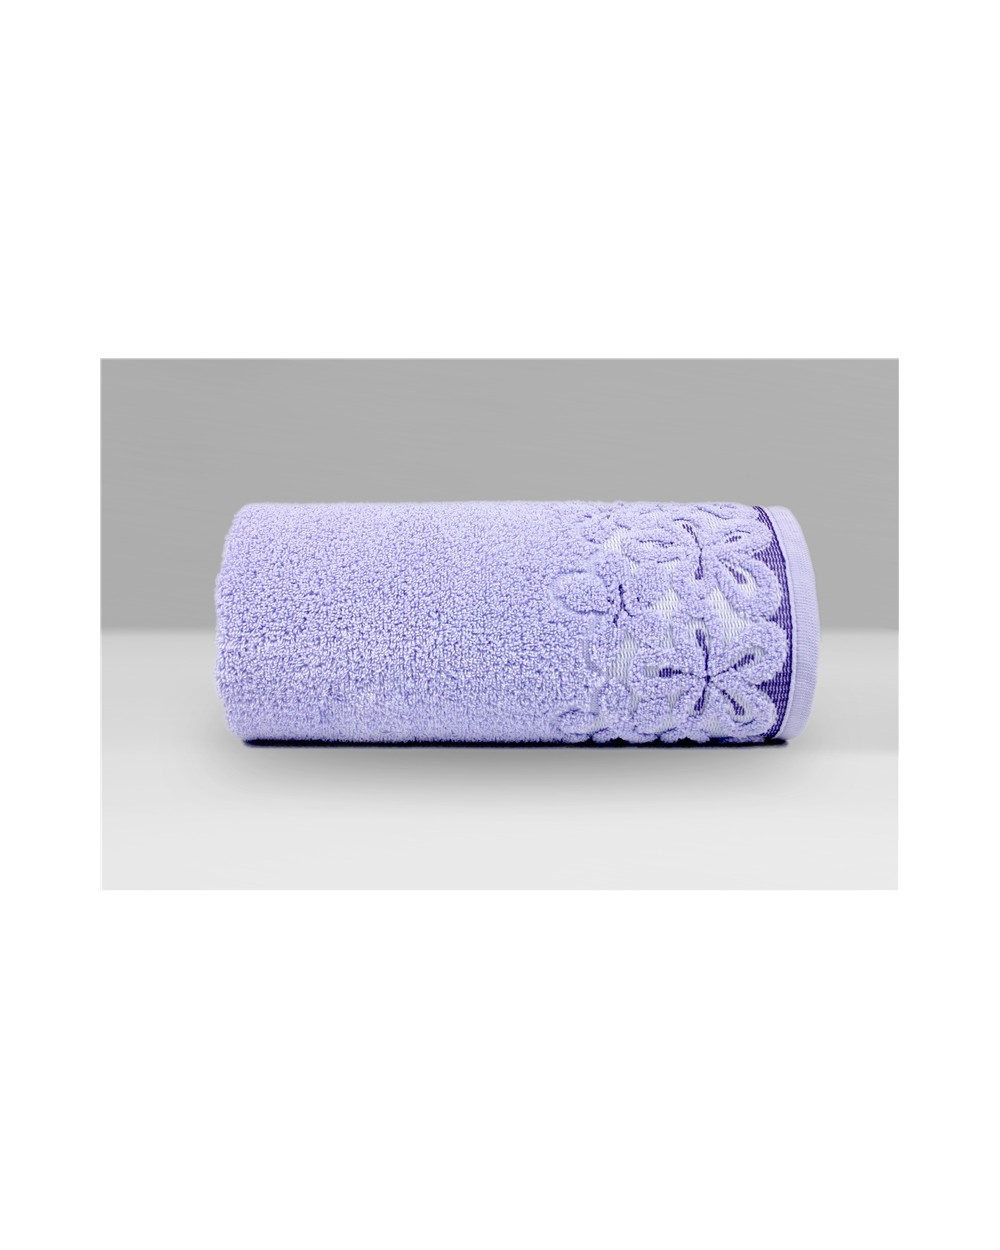 Ręcznik Bella mikrobawełna 30x50 lawendowy